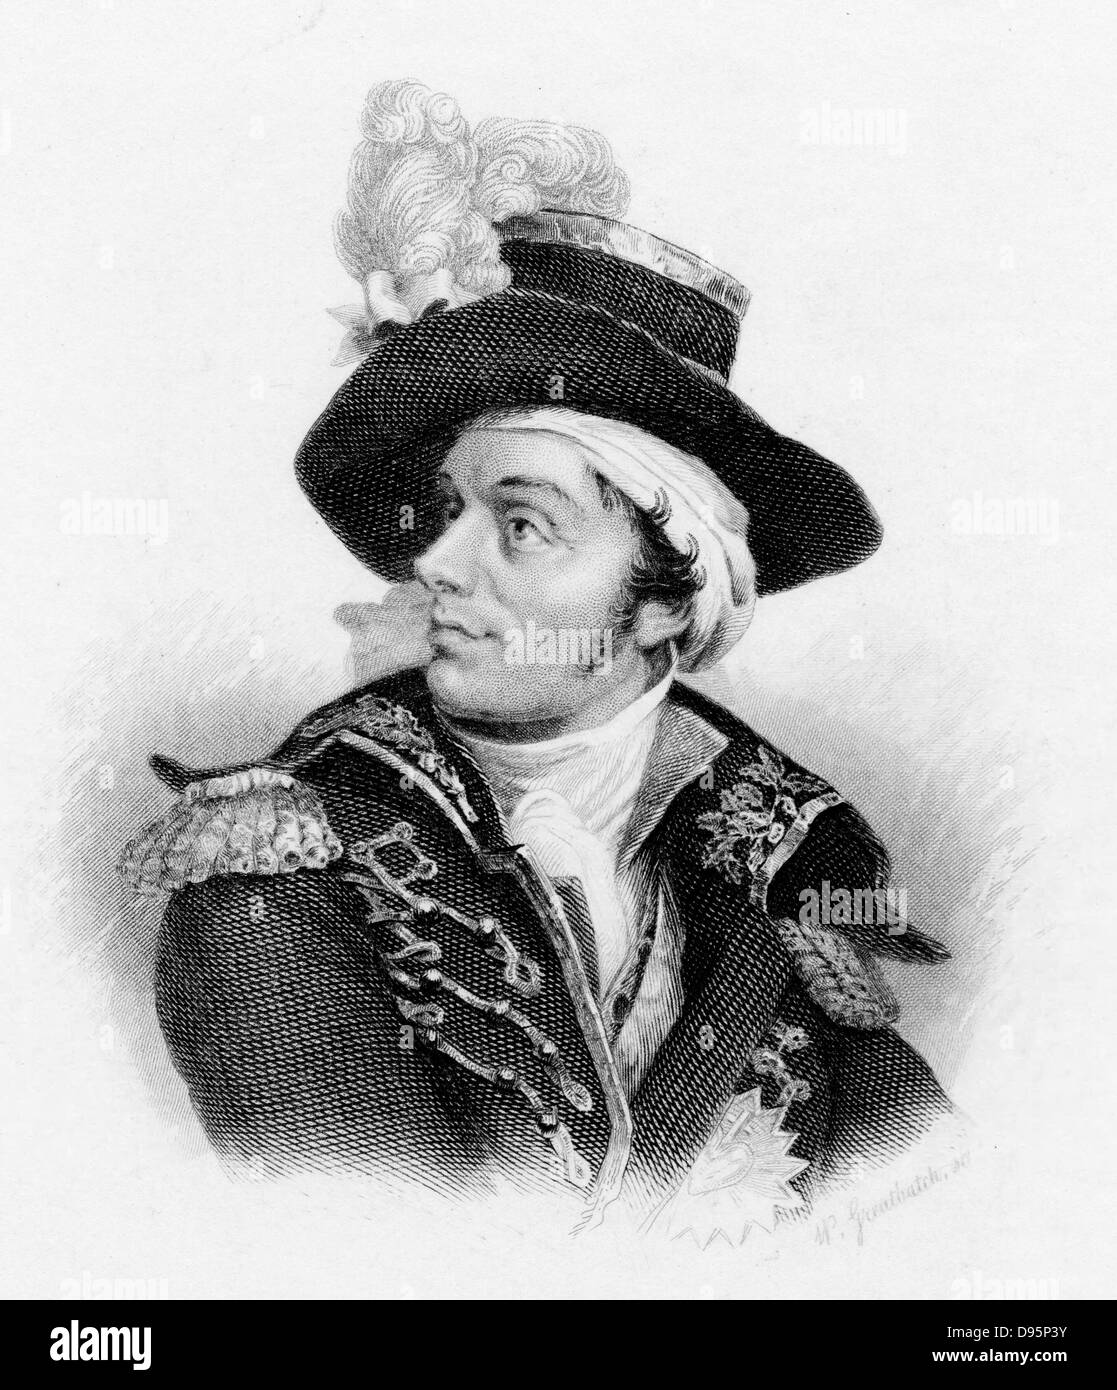 Francois Athanase Charette (1763-96) der Französischen royalistischen konterrevolutionären Führer. Schuß durch die republikanischen General Lazare Hoche. Gravur. Stockfoto